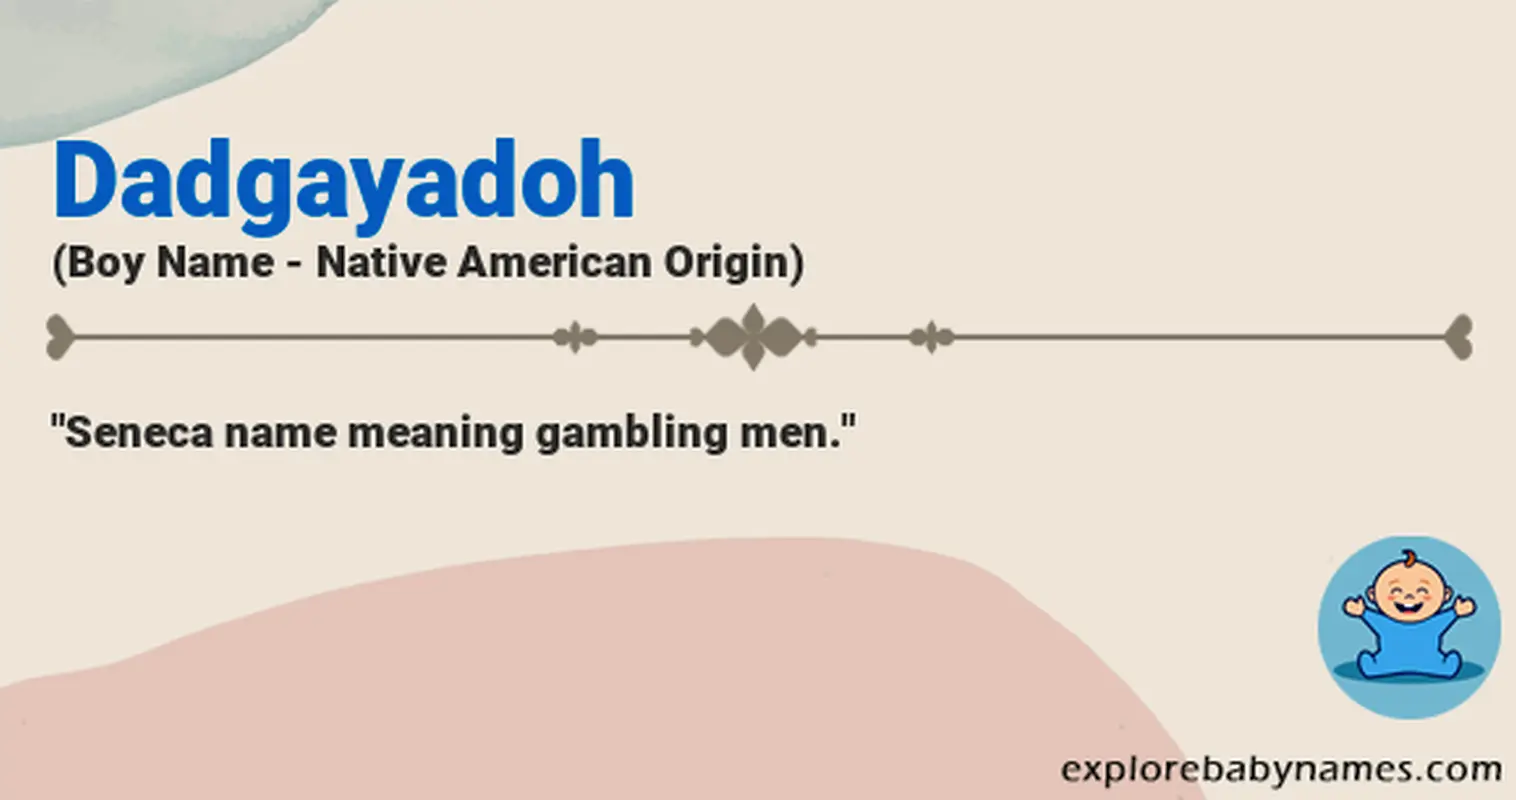 Meaning of Dadgayadoh